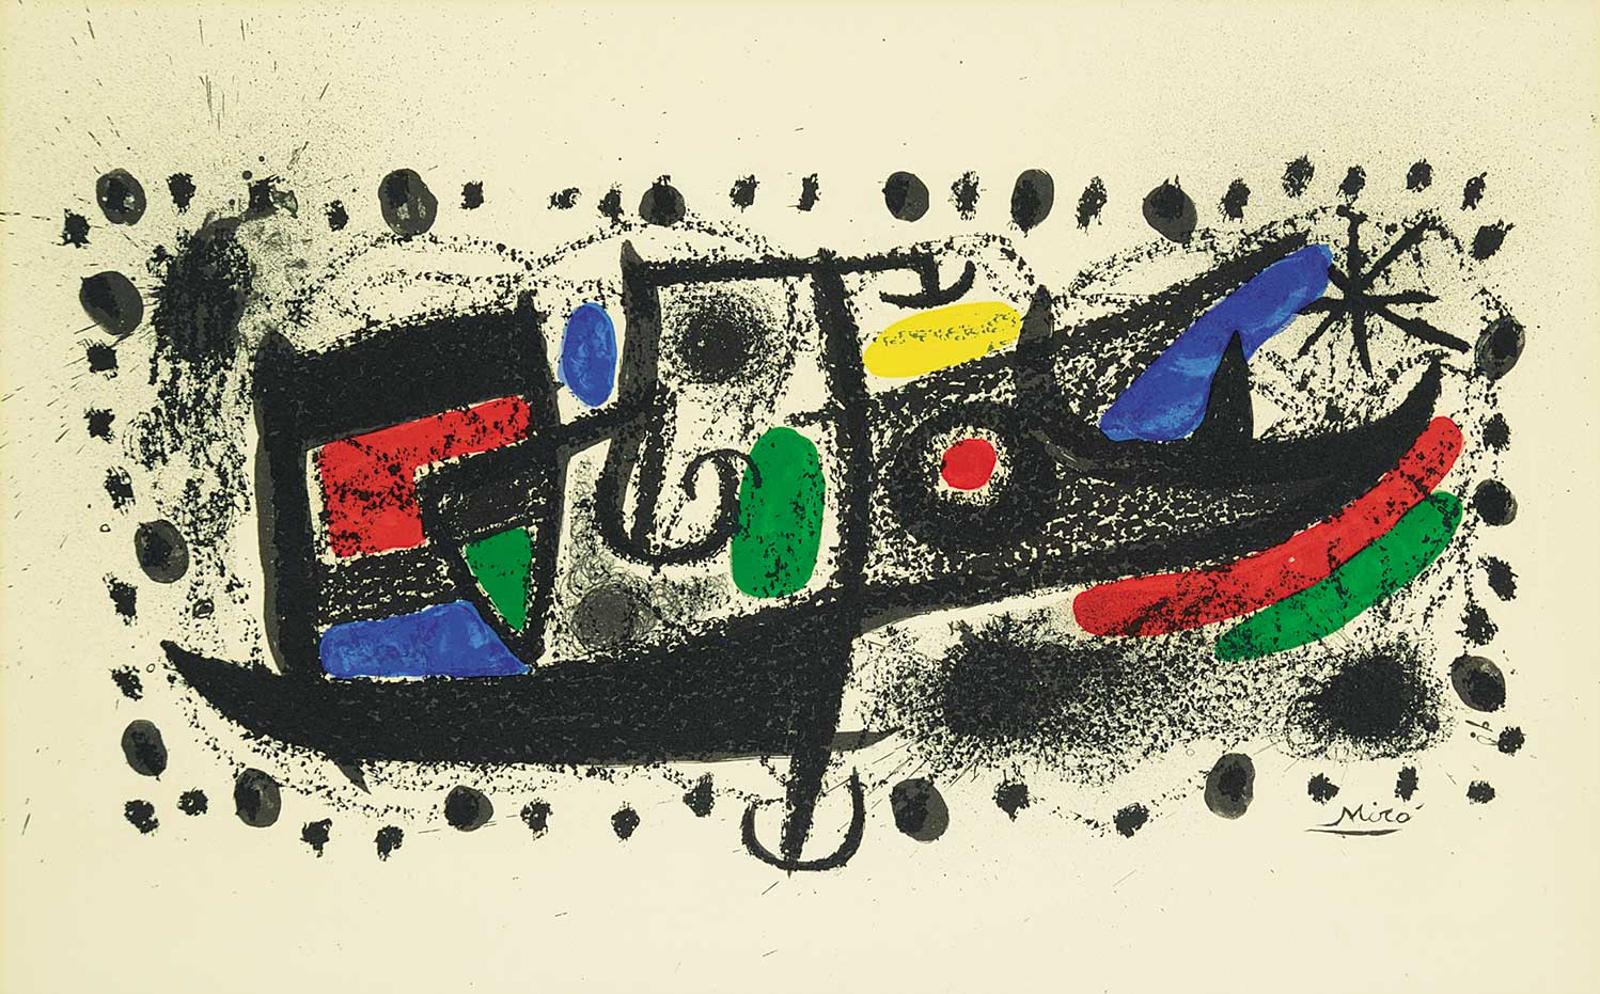 Joan Miró (1893-1983) - Star Scene